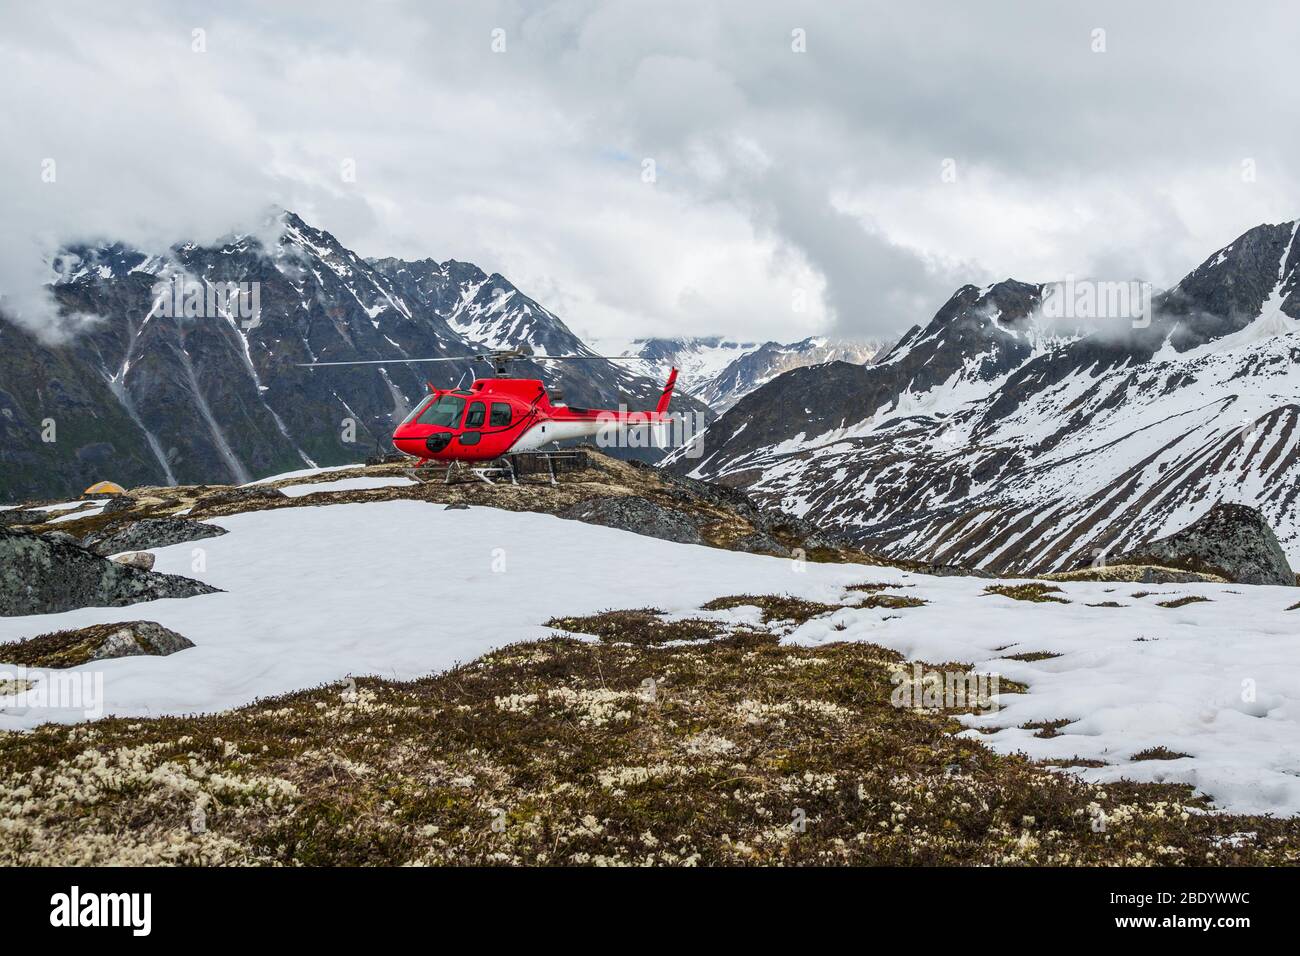 Elicottero atterrato sulla tundra nel lontano backcountry nella catena montuosa di Talkeetna. Accesso in elicottero alla natura selvaggia dell'Alaska. Foto Stock